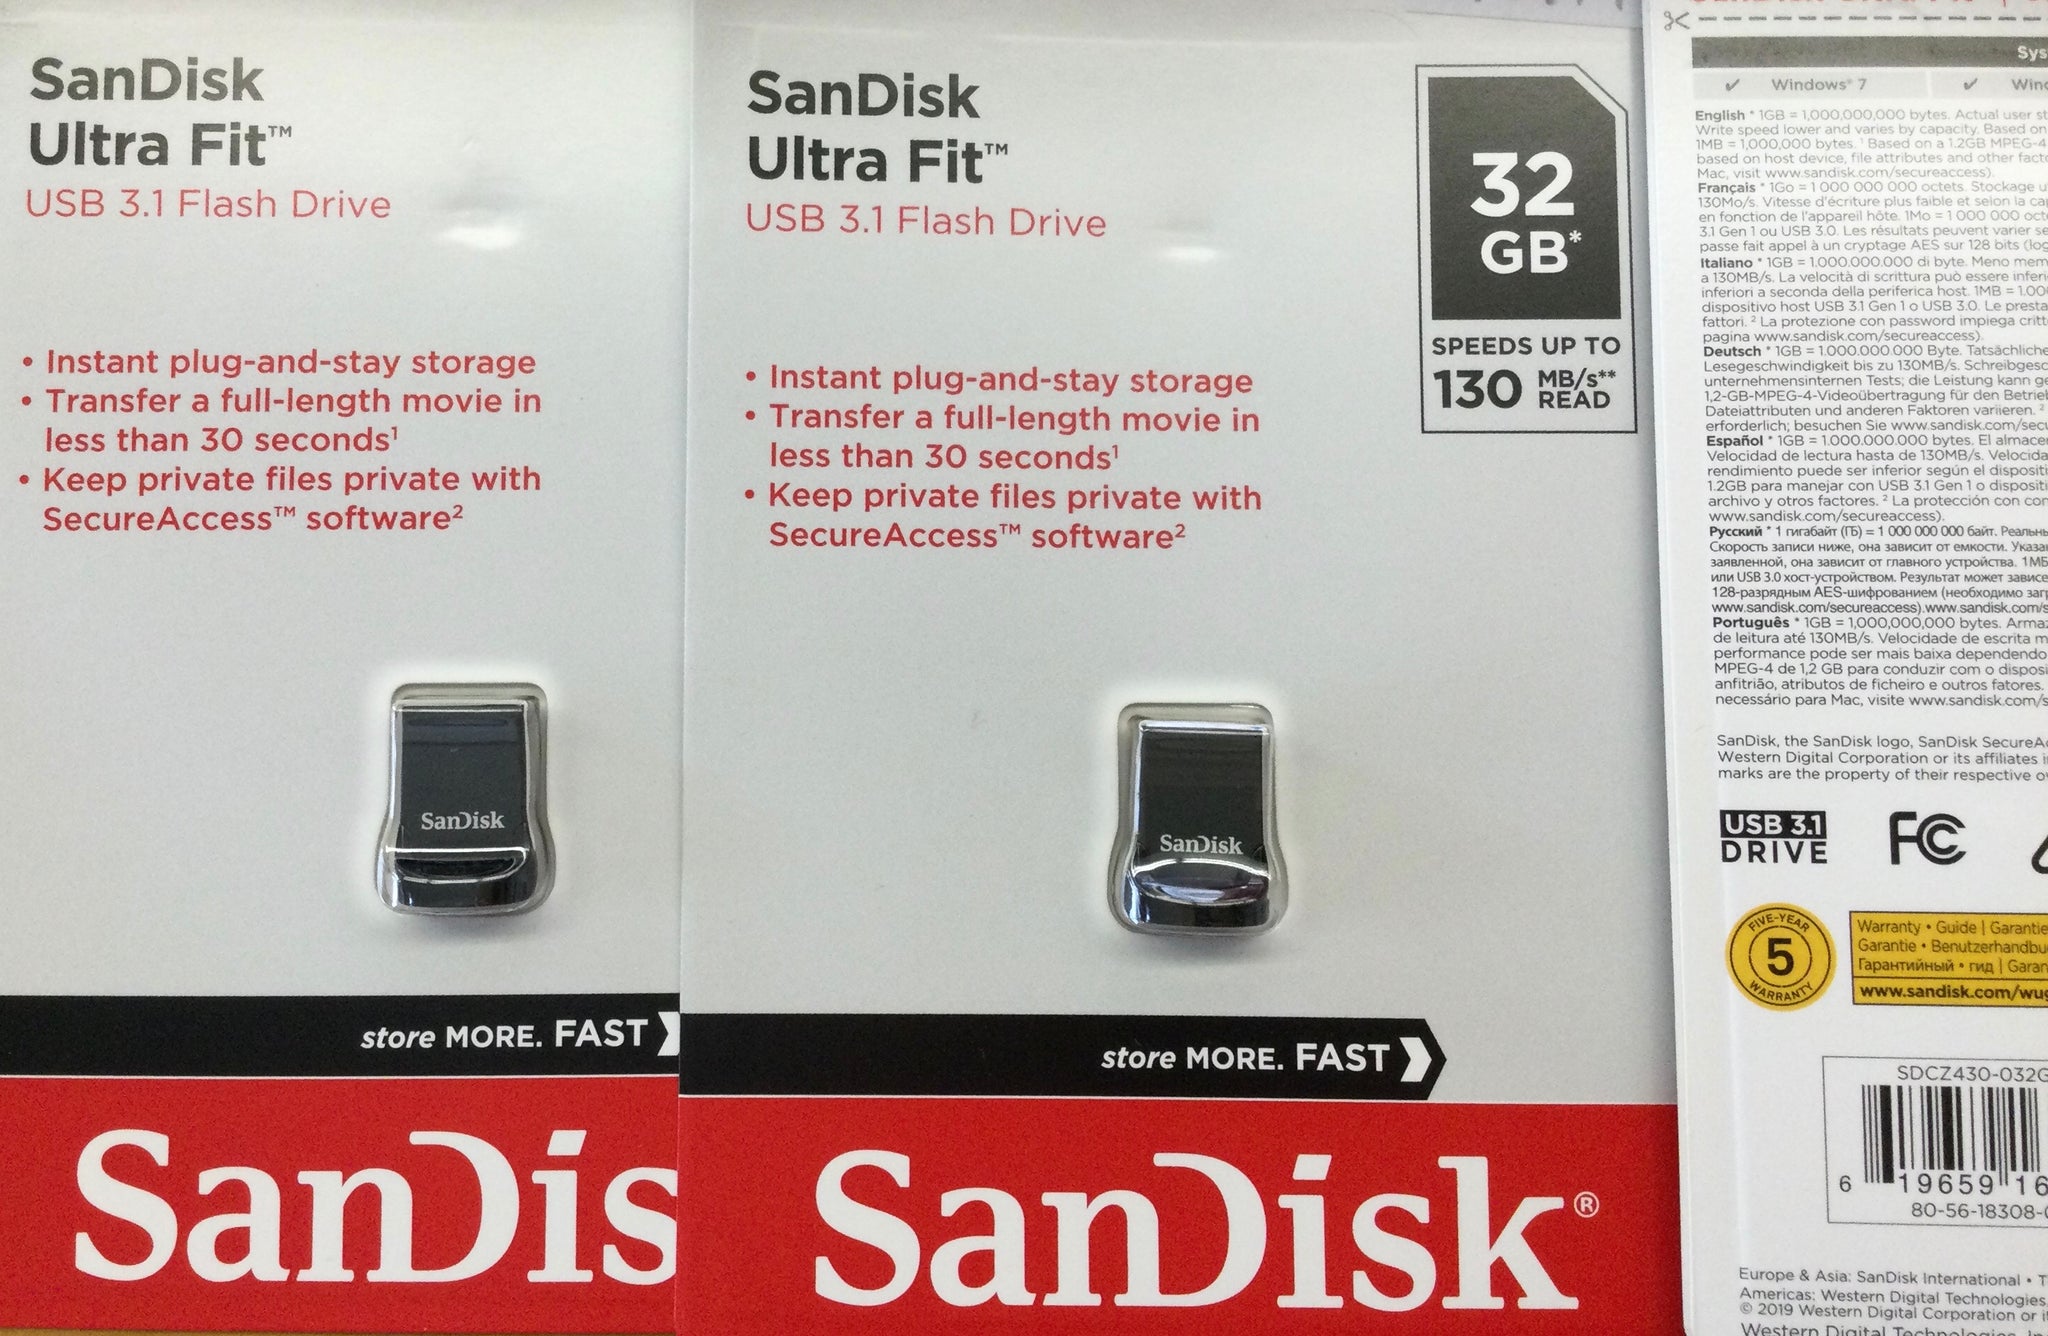 SanDisk Ultra Fit USB 3.1 flash drive